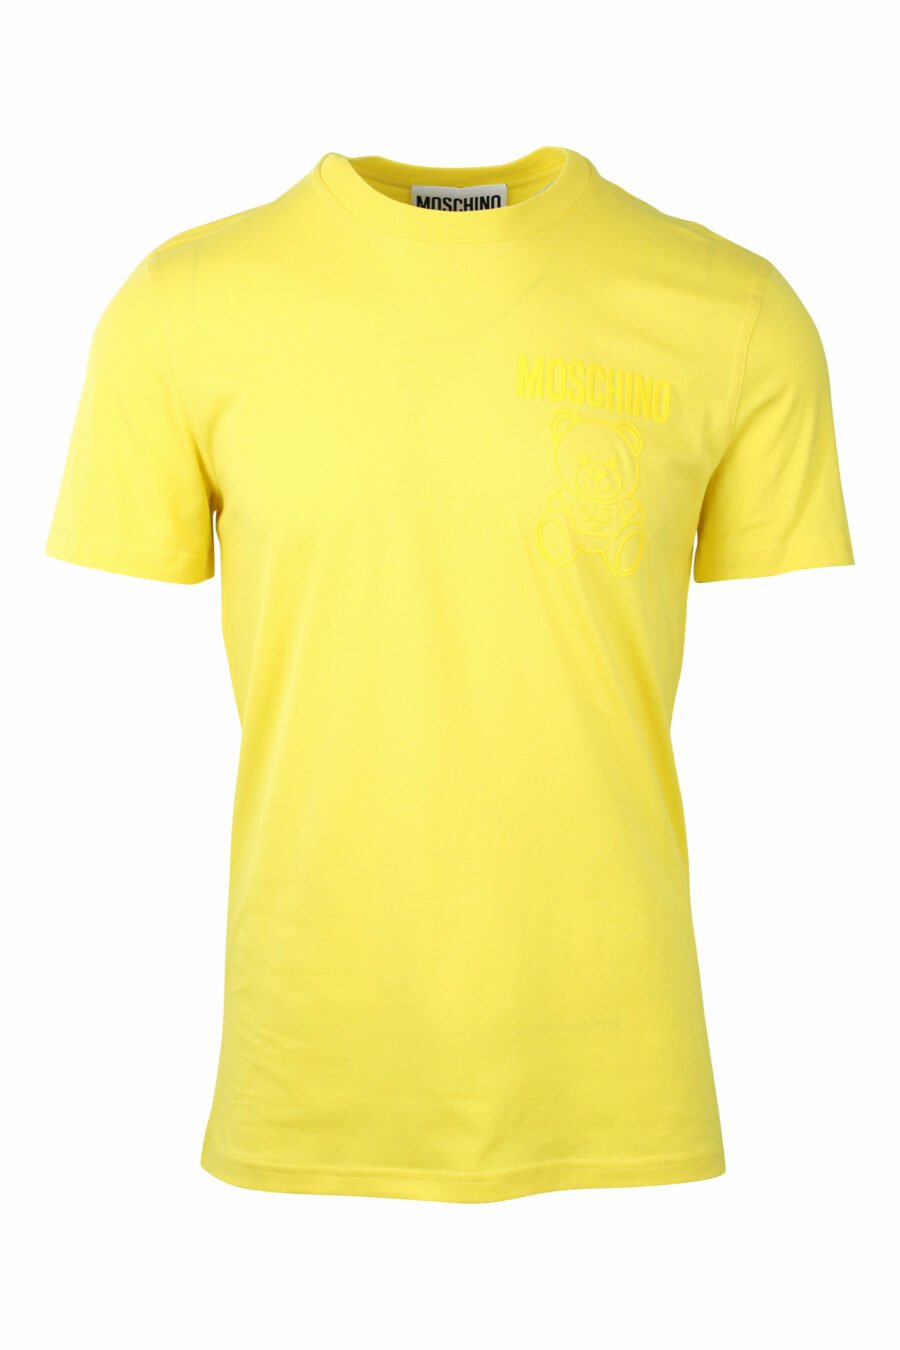 T-shirt amarela com minilogo de urso monocromático - IMG 1412